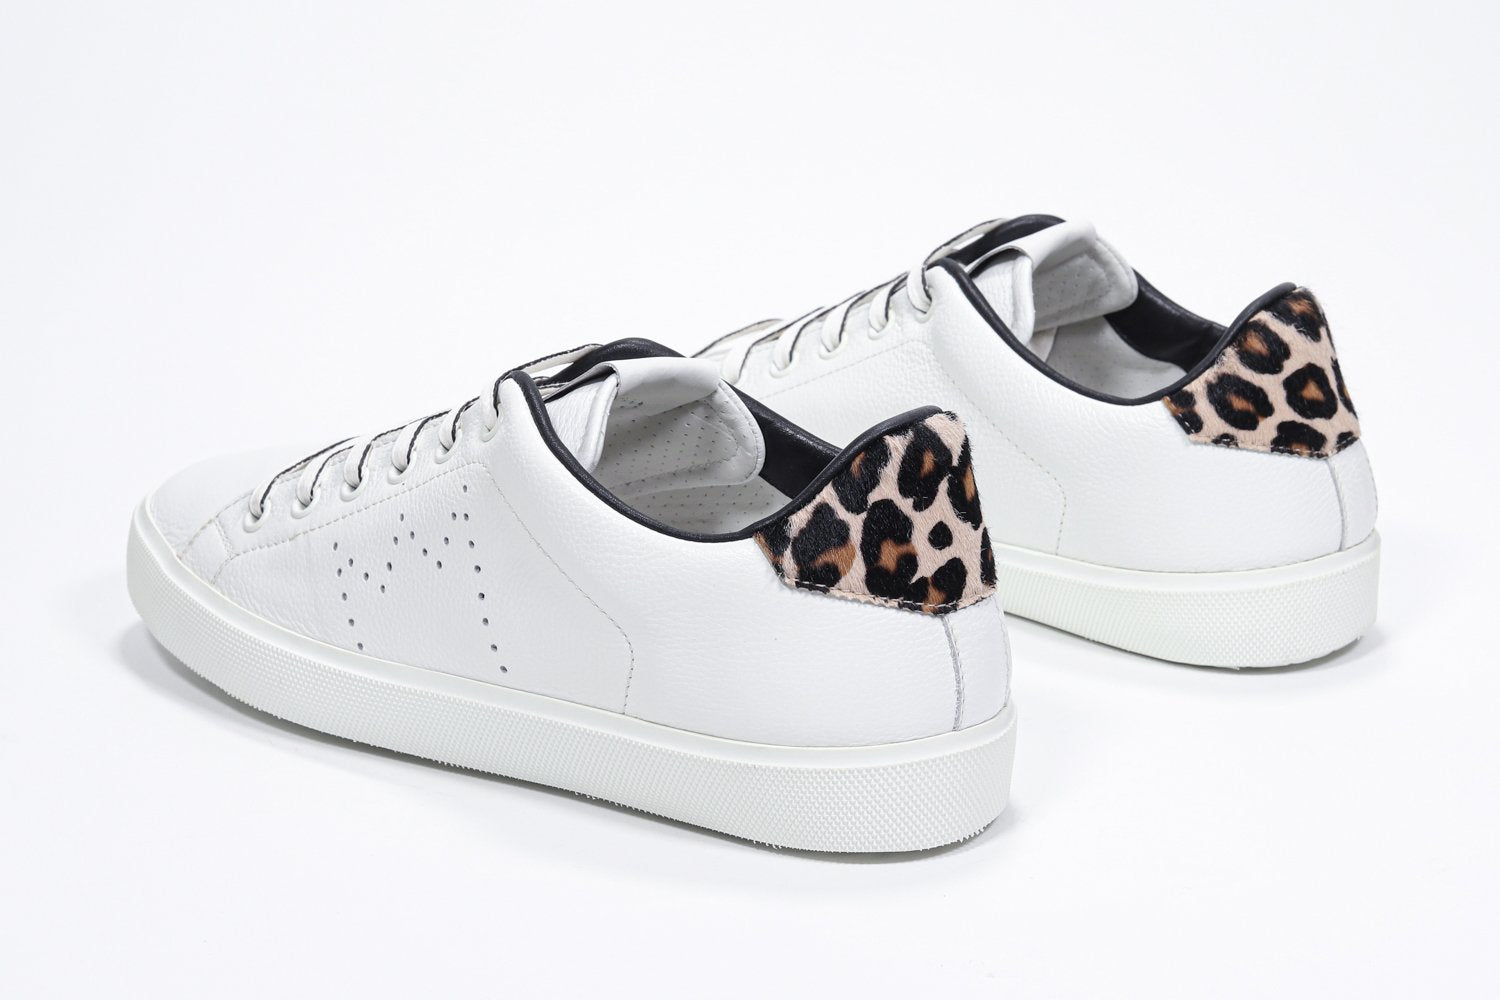 Dreiviertelansicht der Rückseite des weißen Low-Top-Schuhs sneaker mit Leopardendetails und perforiertem Kronenlogo auf dem Obermaterial. Obermaterial aus Vollleder und weiße Gummisohle.